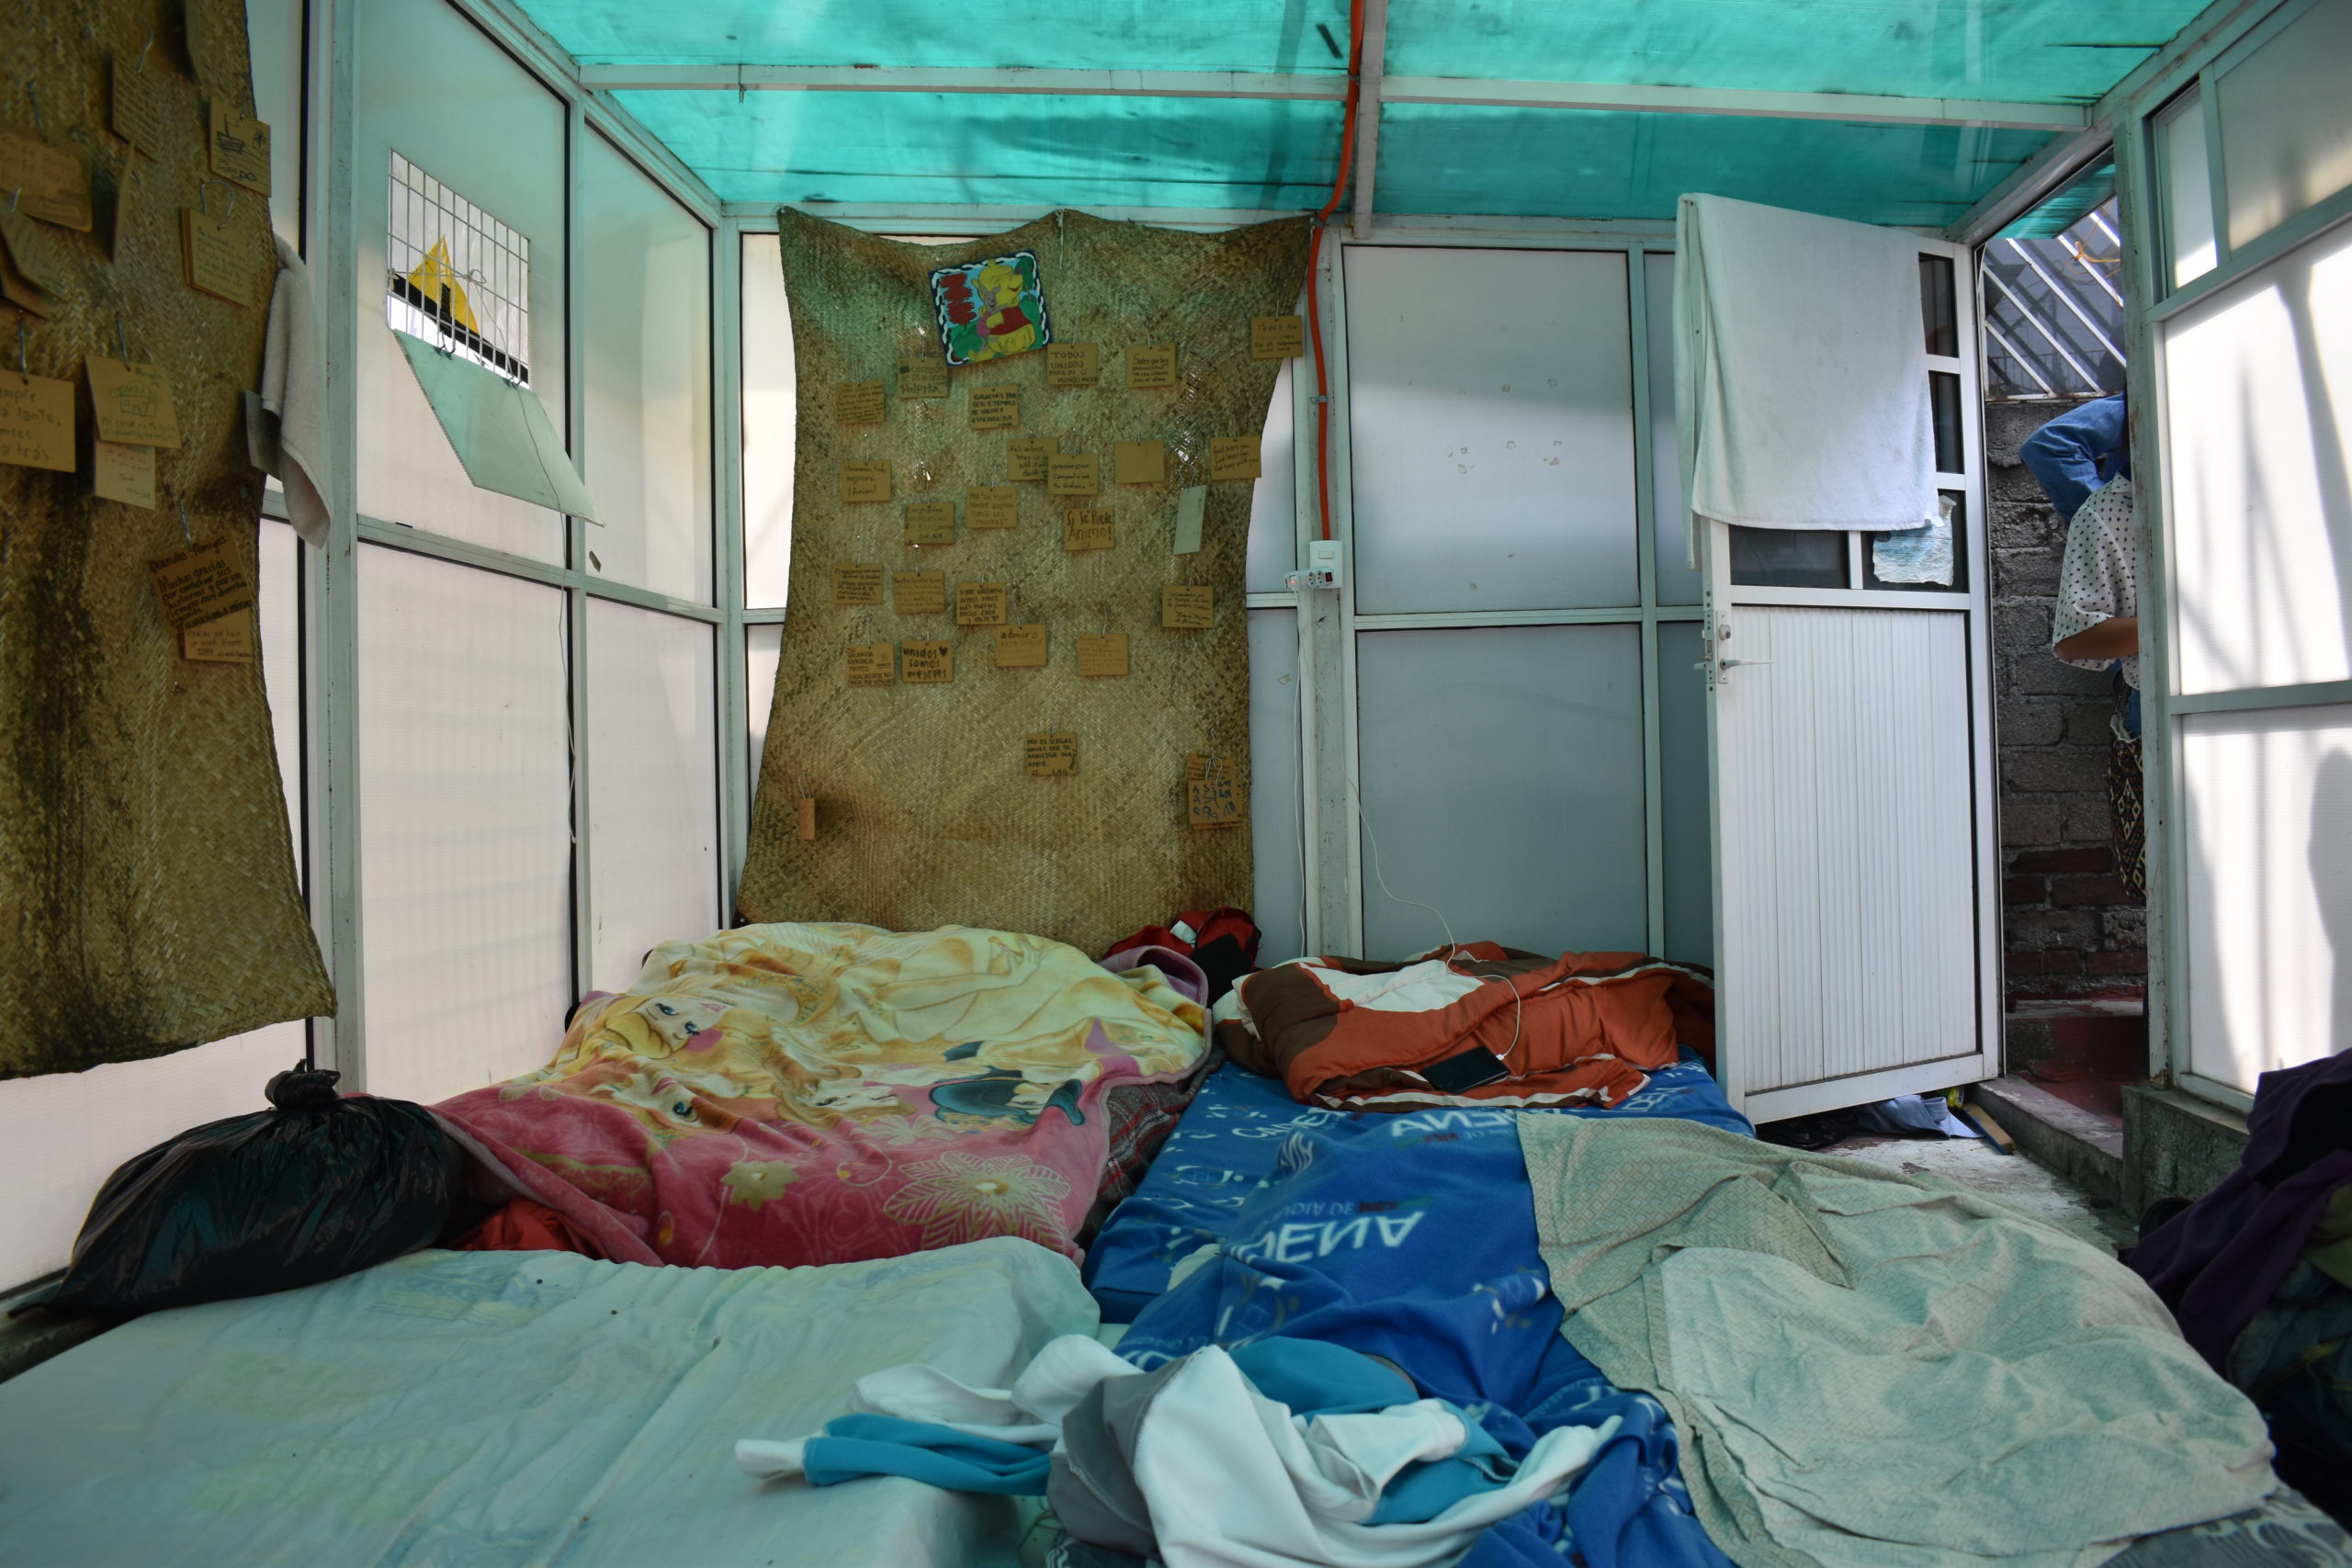 La habitación donde antes dormían las personas migrantes contagiadas con Covid-19. | Foto: Emilio Almaraz / Conexión Migrante.